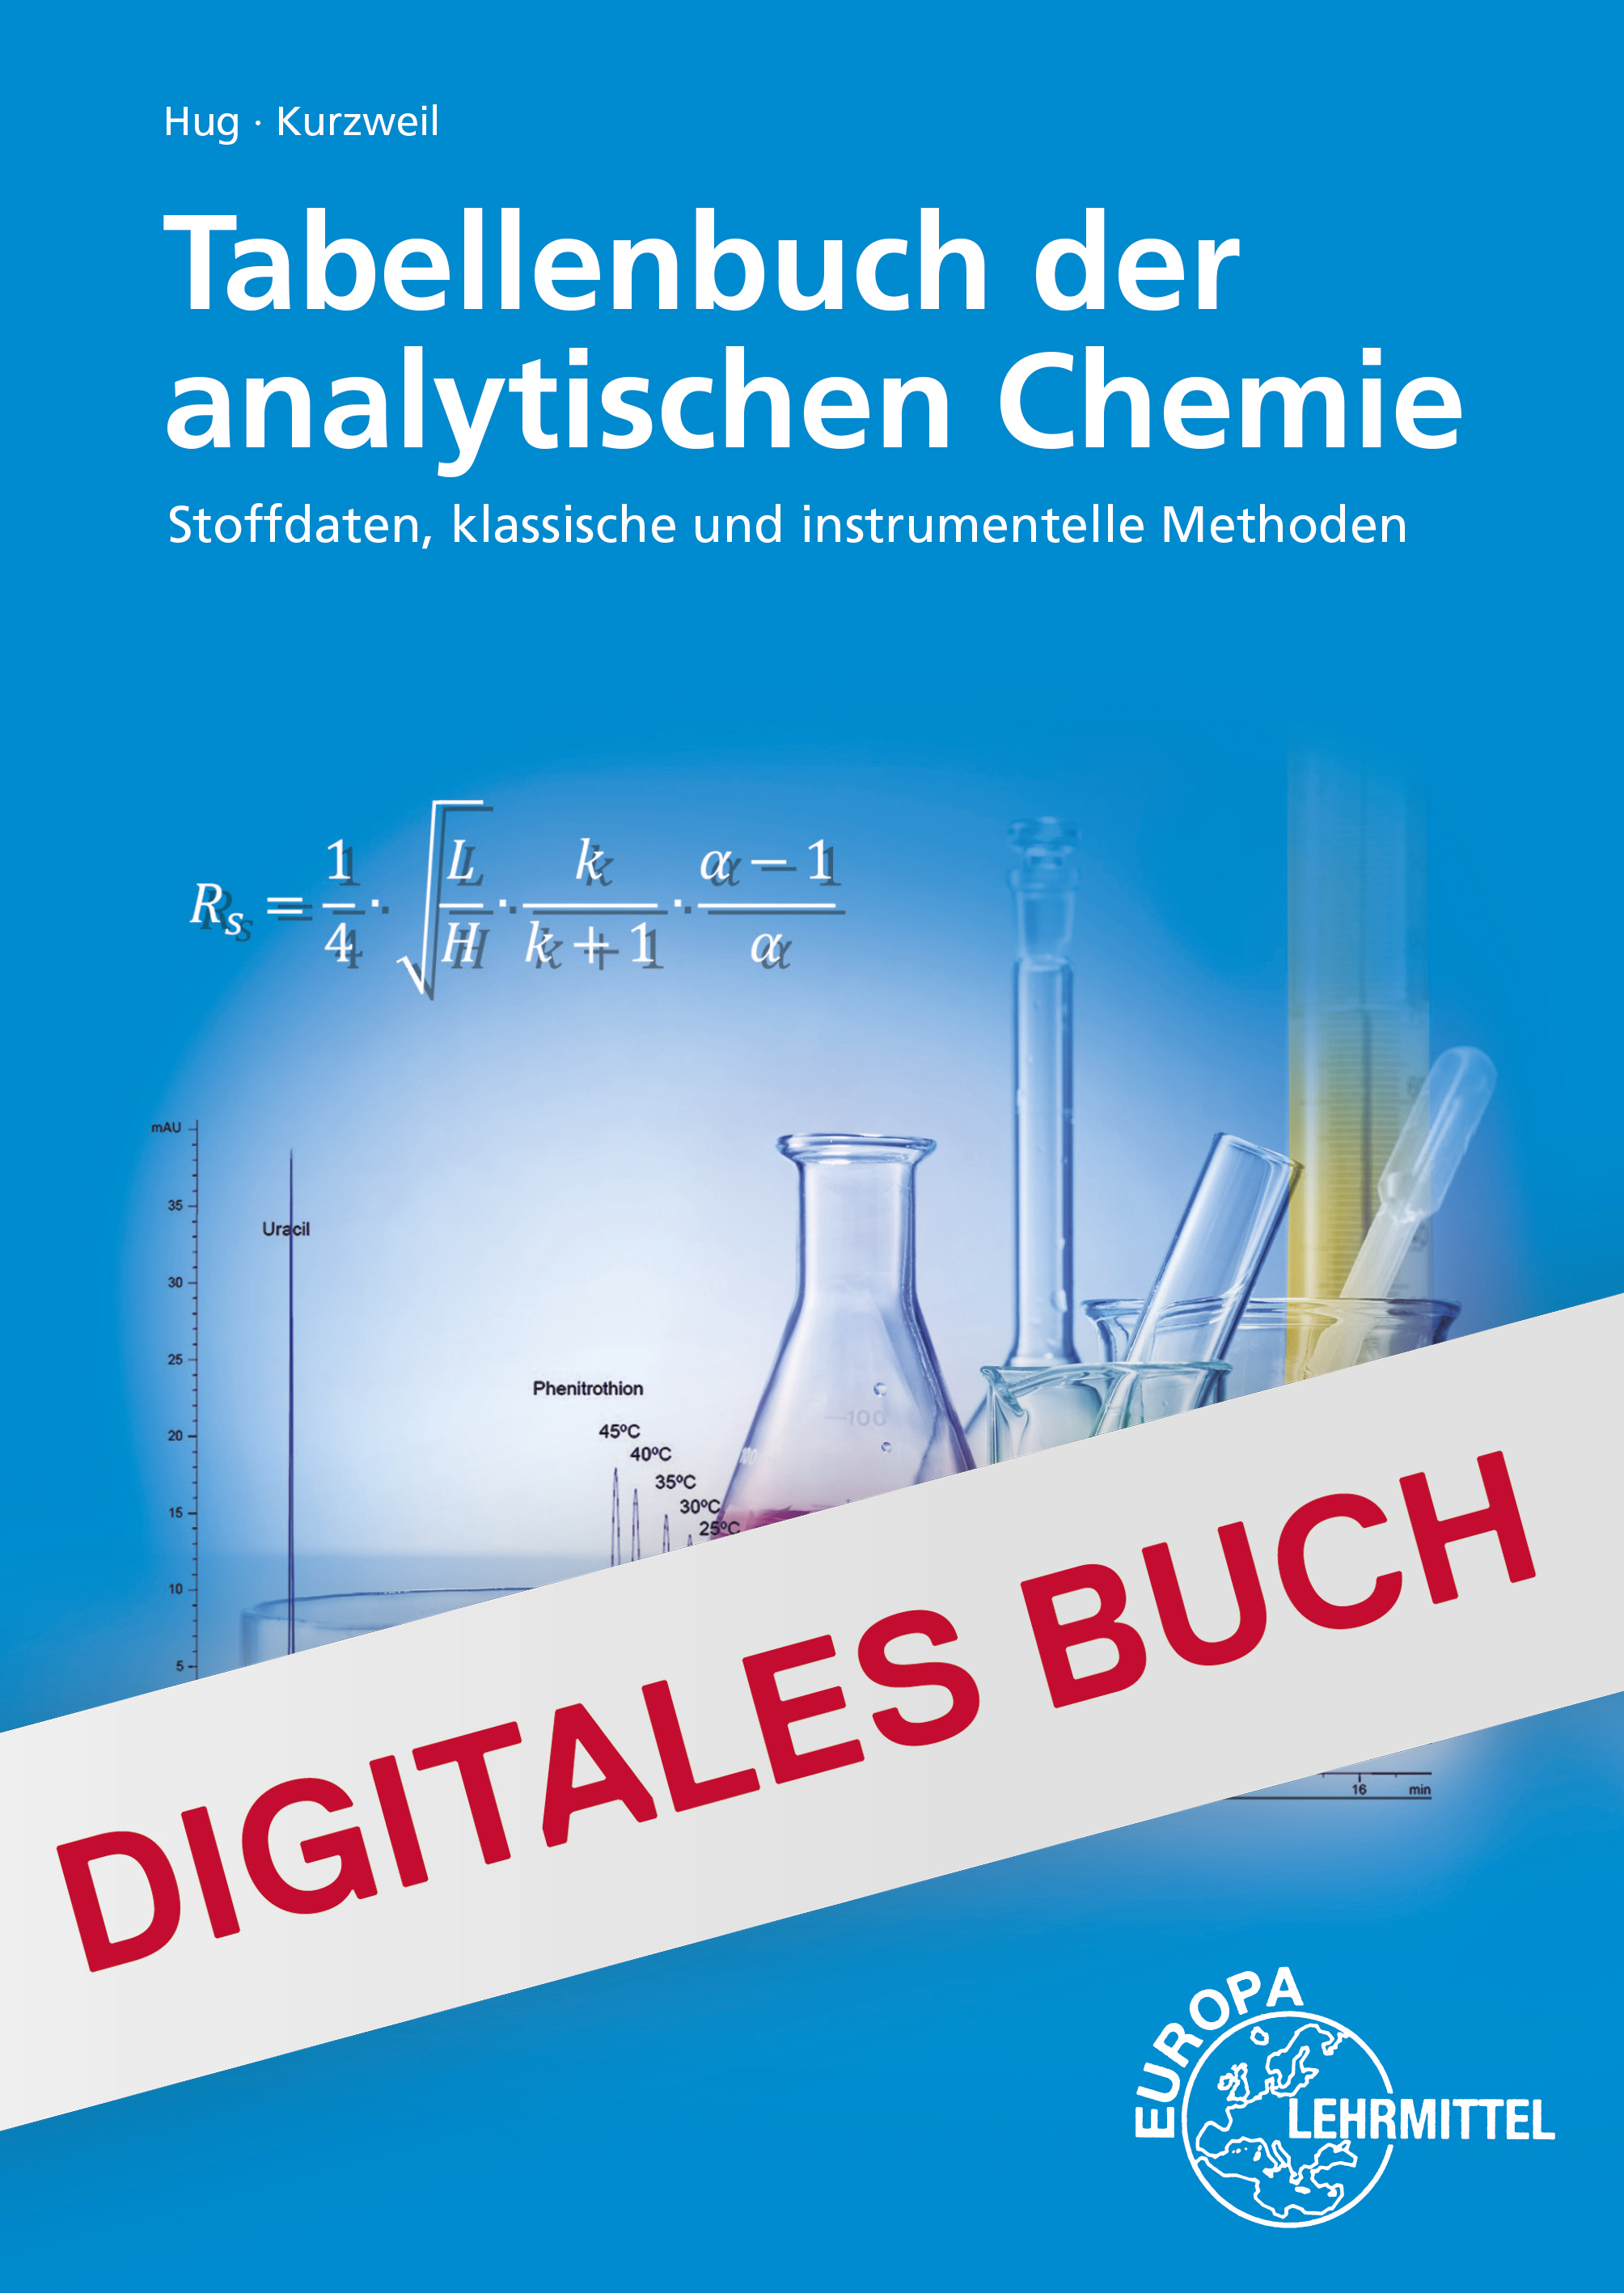 Tabellenbuch der analytischen Chemie - Digitales Buch